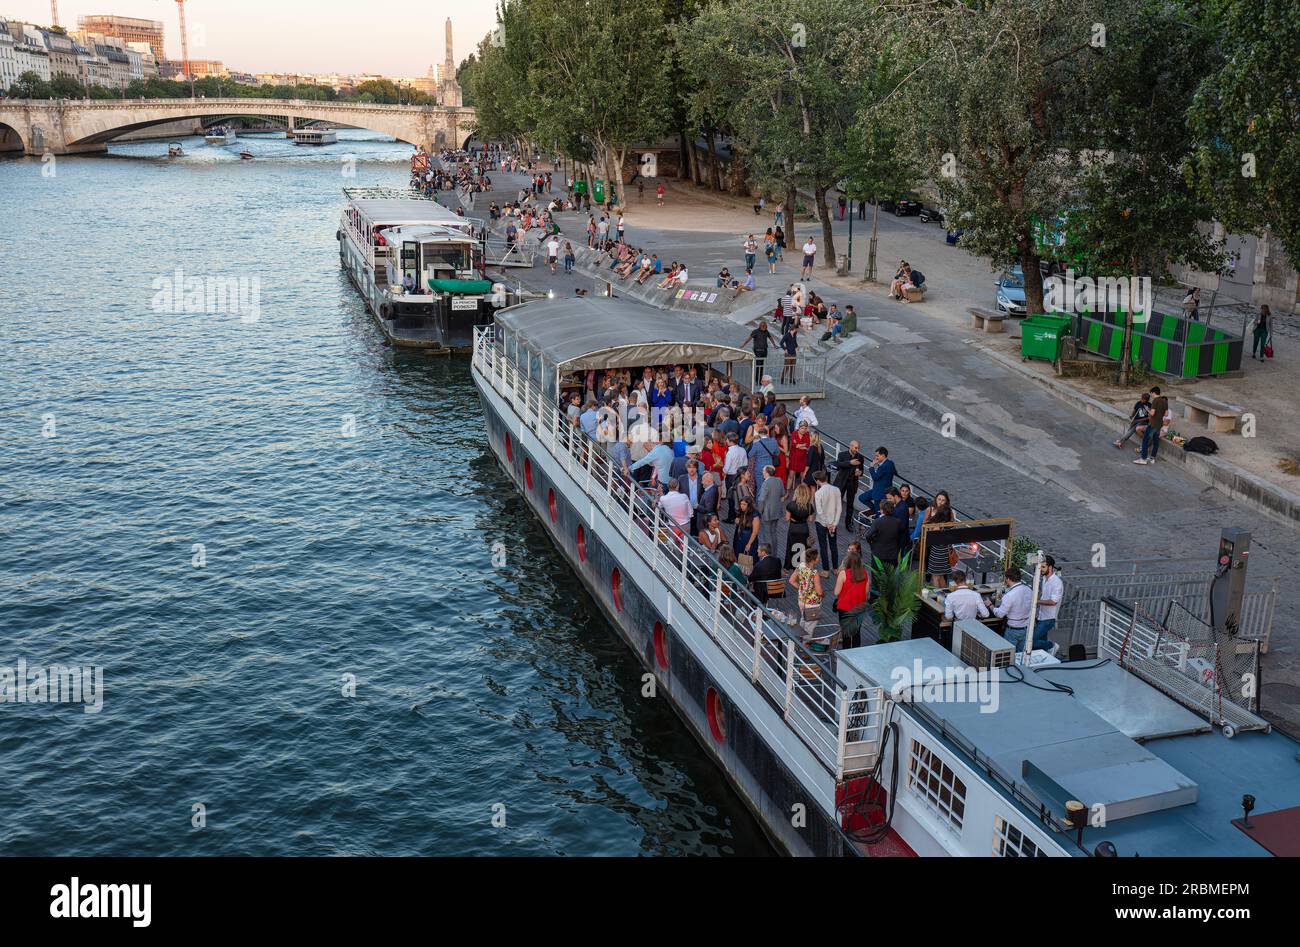 Romantisches Paris. Bei Sonnenuntergang versammeln sich die Menschen am linken seine-Ufer im Quartier Latin, um sich auf dem Boot zu treffen. Quai de la Tournelle, 5 Arr. Paris. Stockfoto